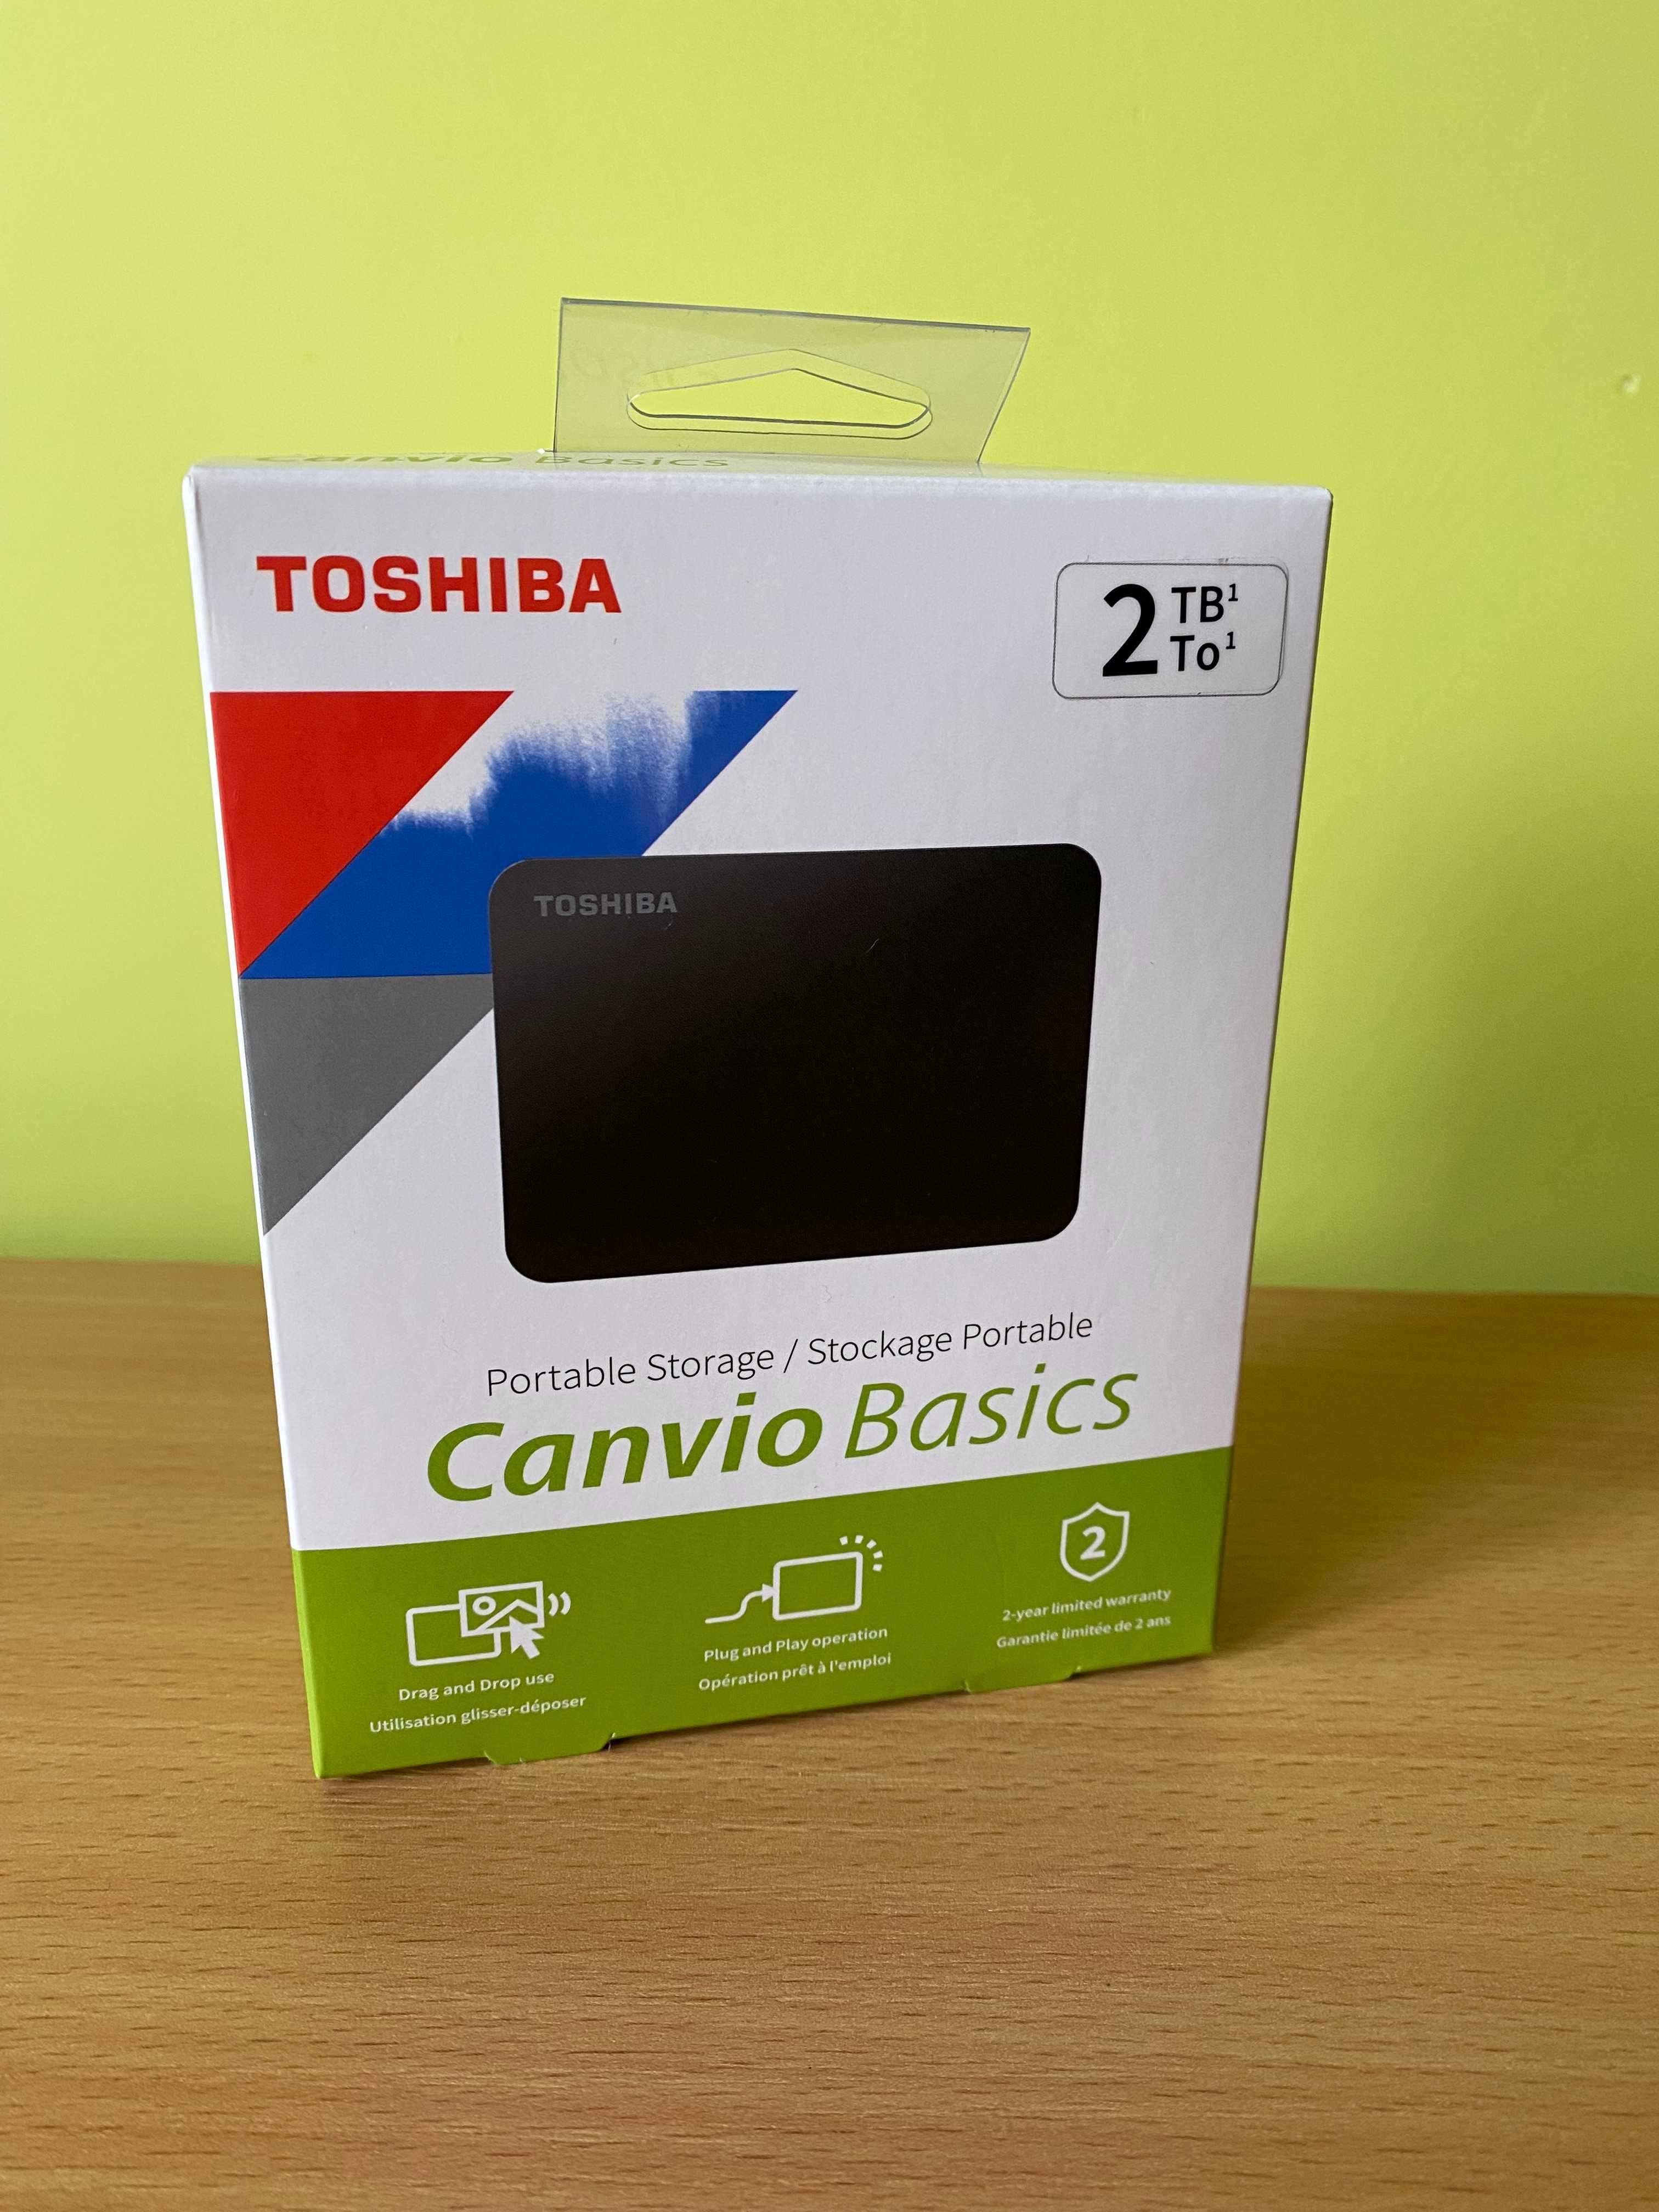 Dysk zewnętrzny Toshiba Canvio Basics 2TB